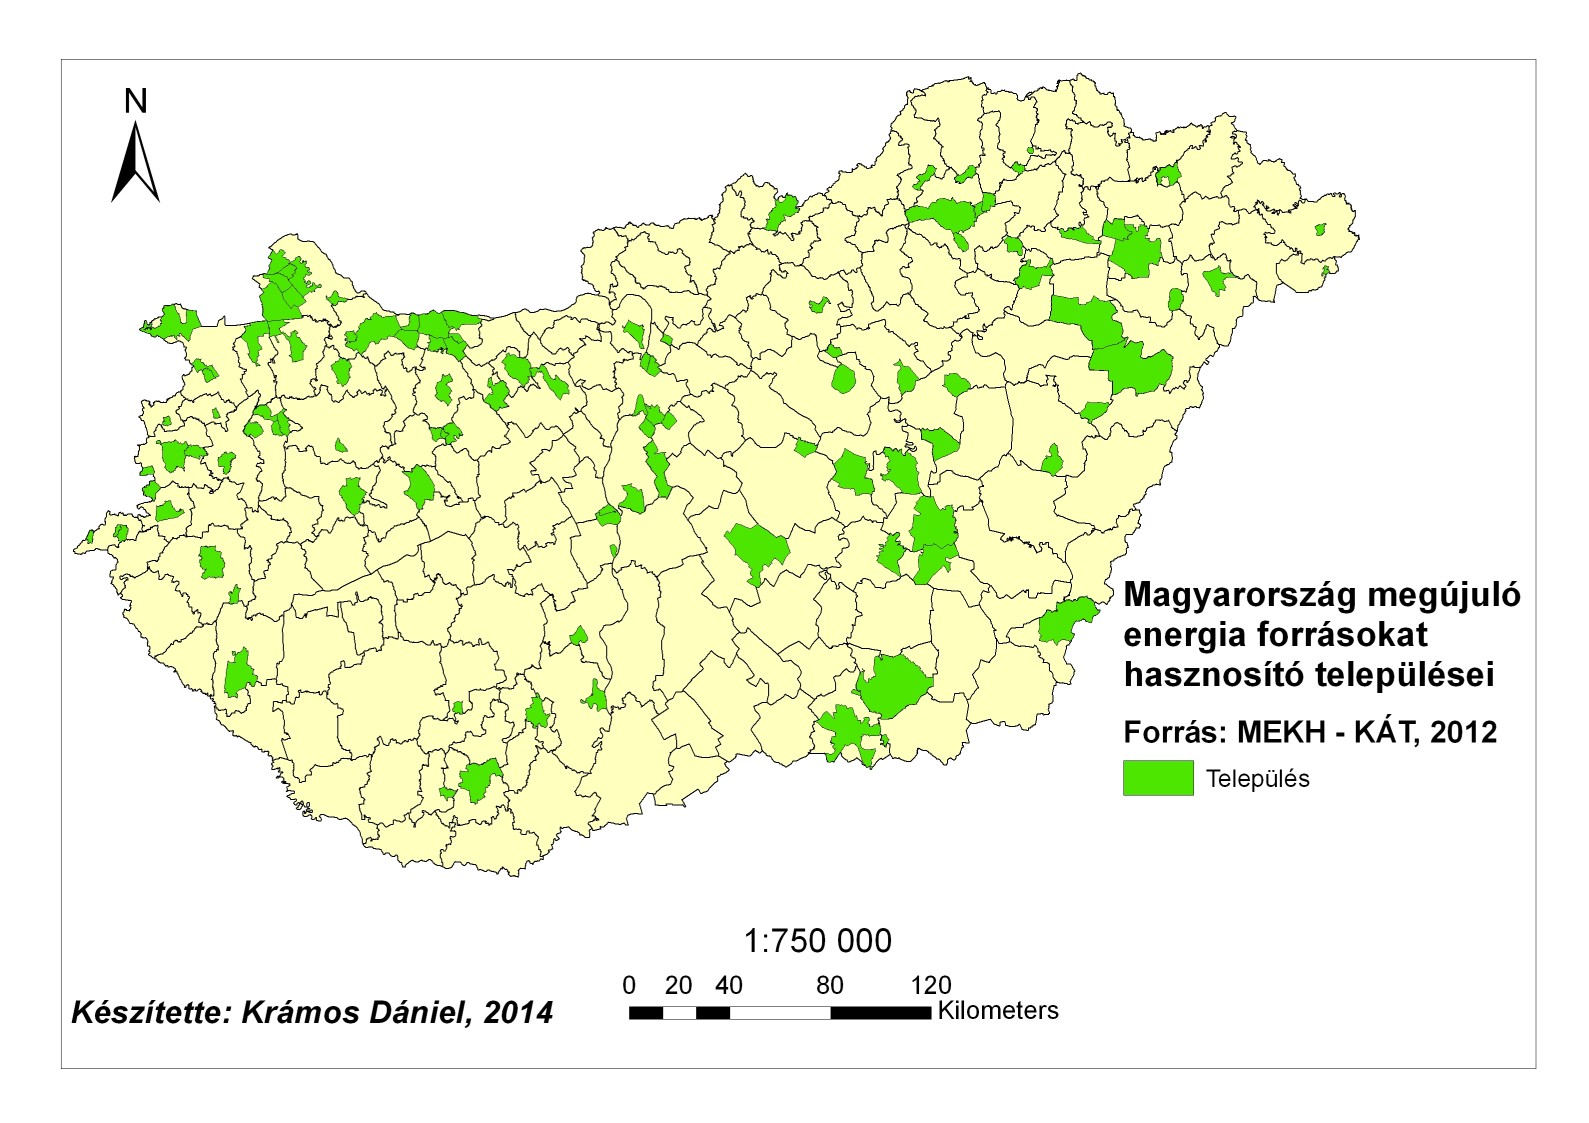 Magyarország megújuló energiaforrásokat hasznosító települései és fővárosi kerületei 2012-ben - térkép